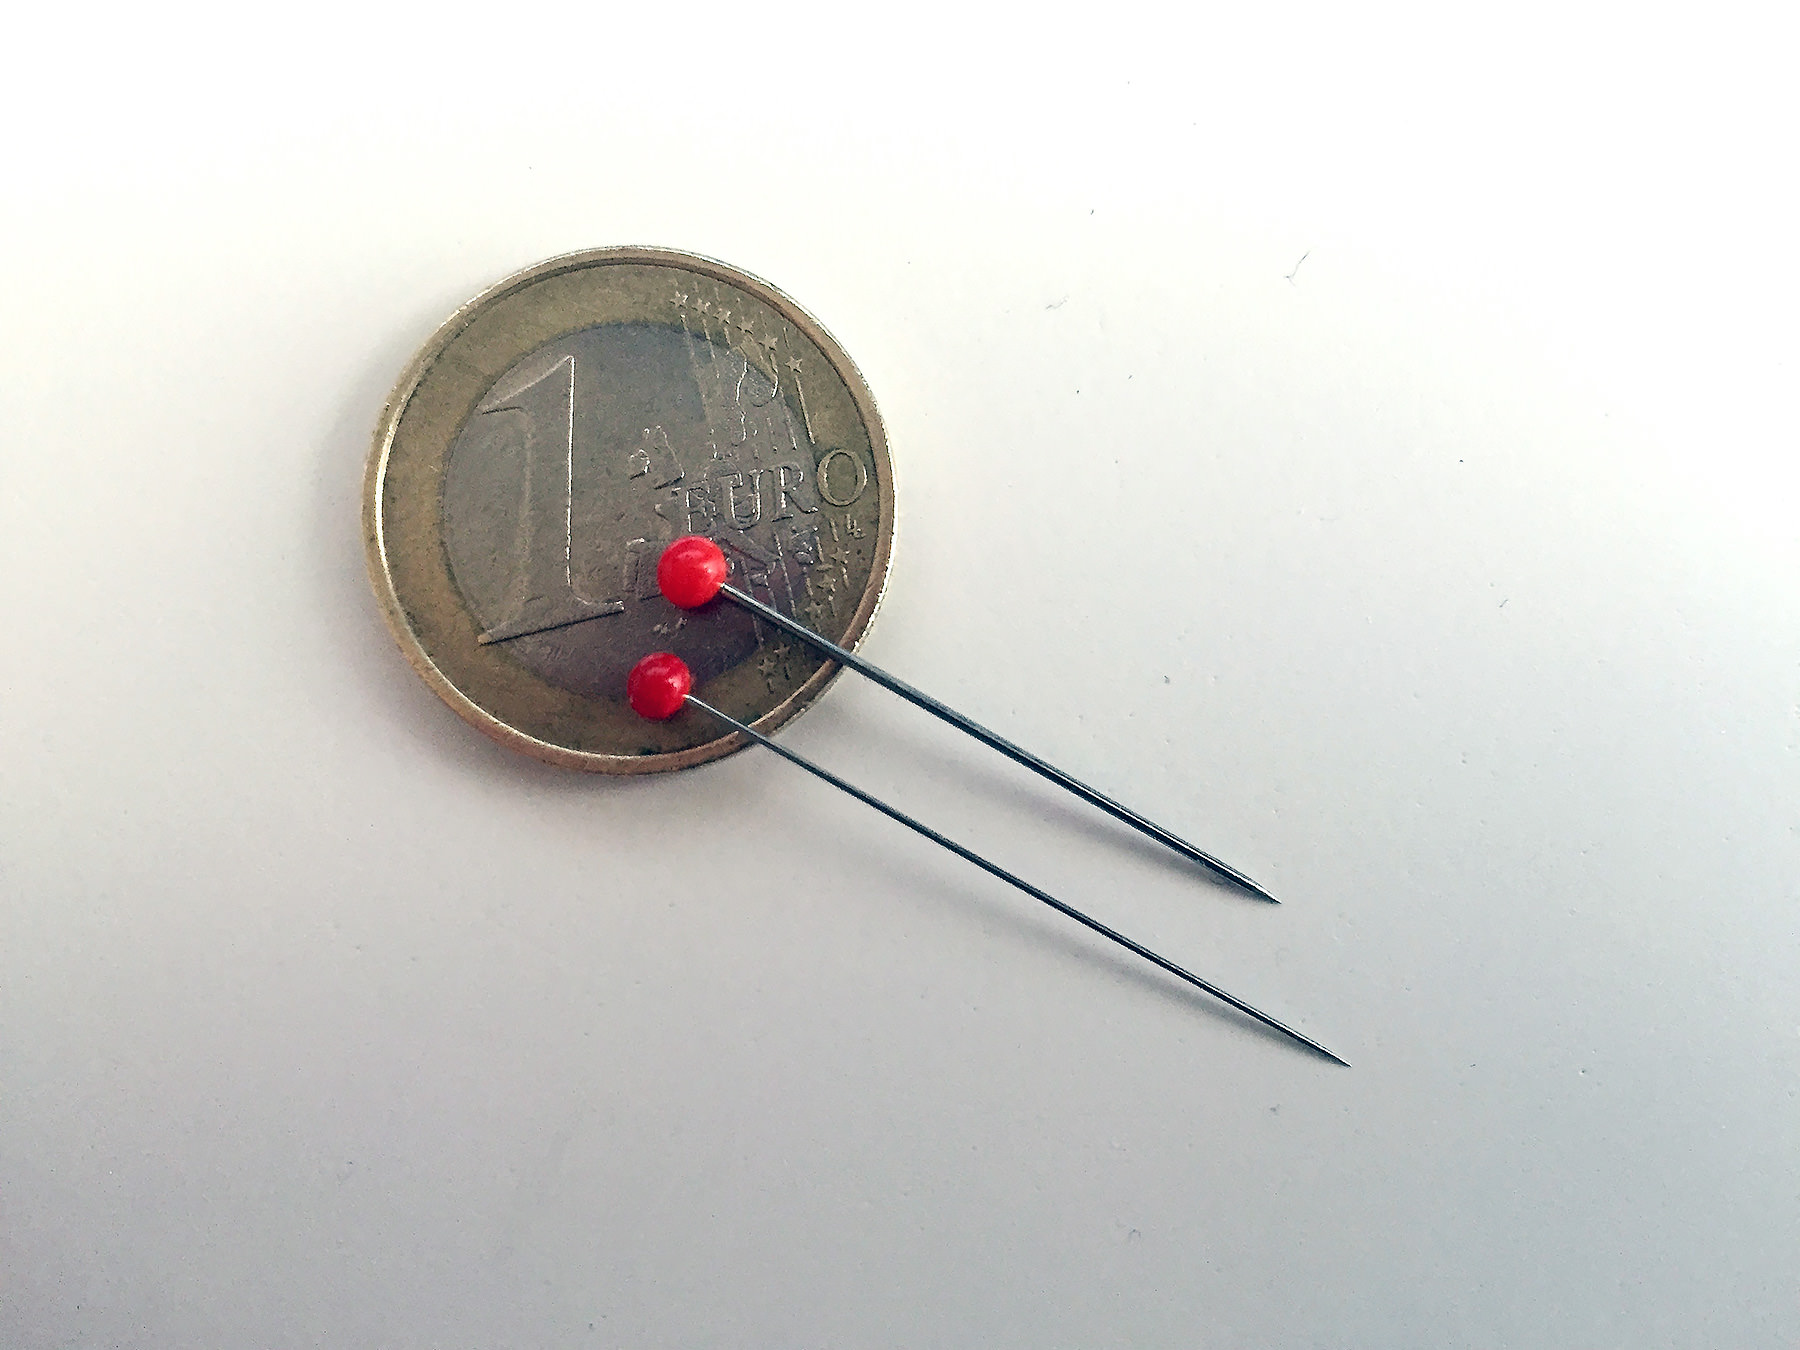 Standard pins versus thin pins.